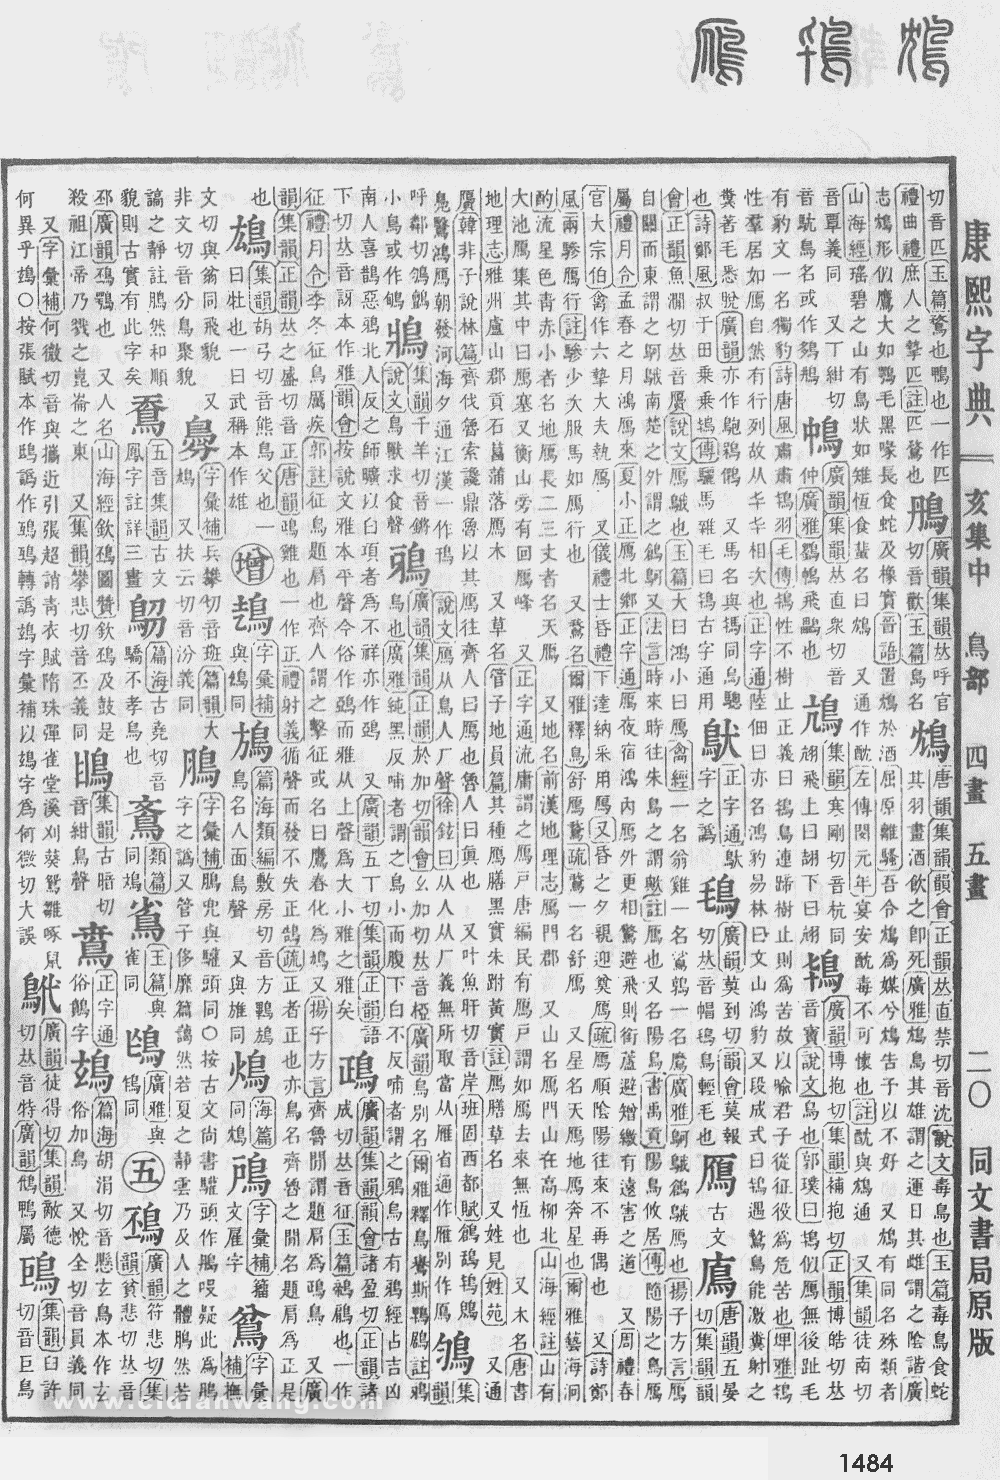 康熙字典掃描版第1484頁